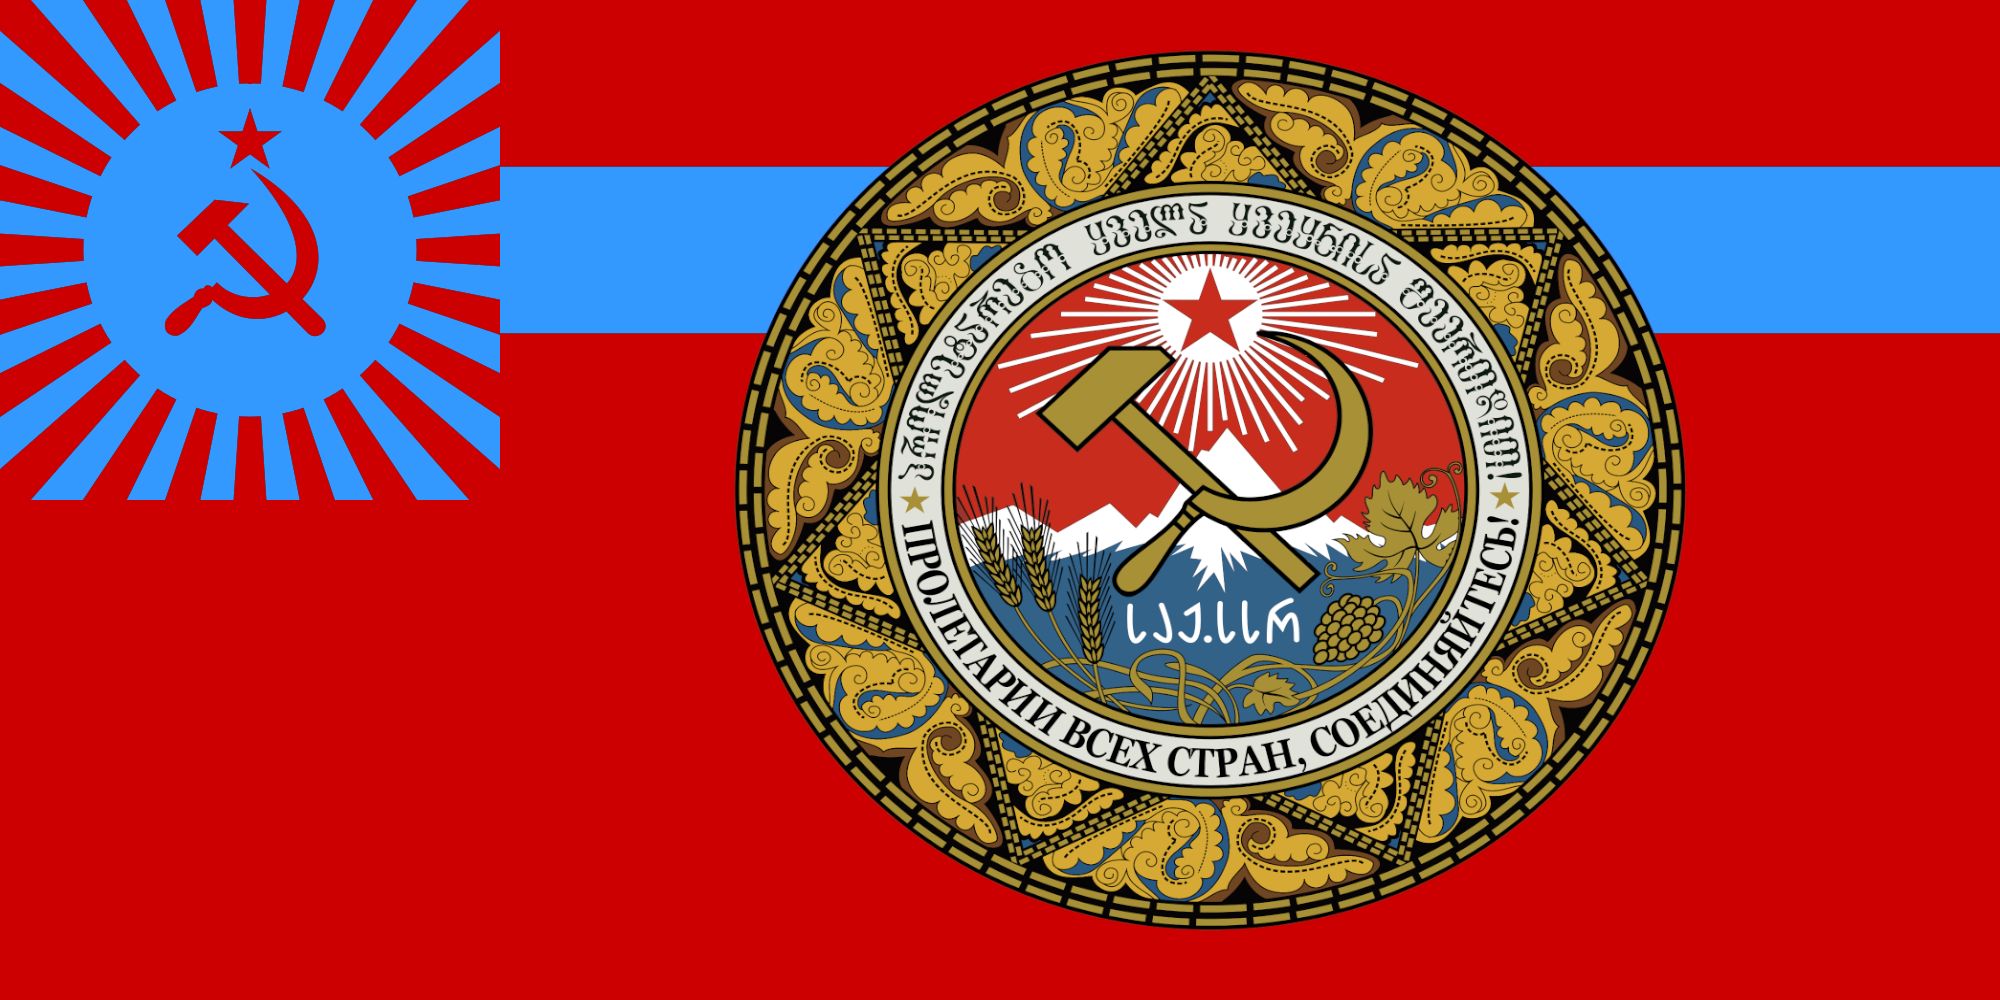 Скачать обои Флаг Грузинской Советской Социалистической Республики на телефон бесплатно